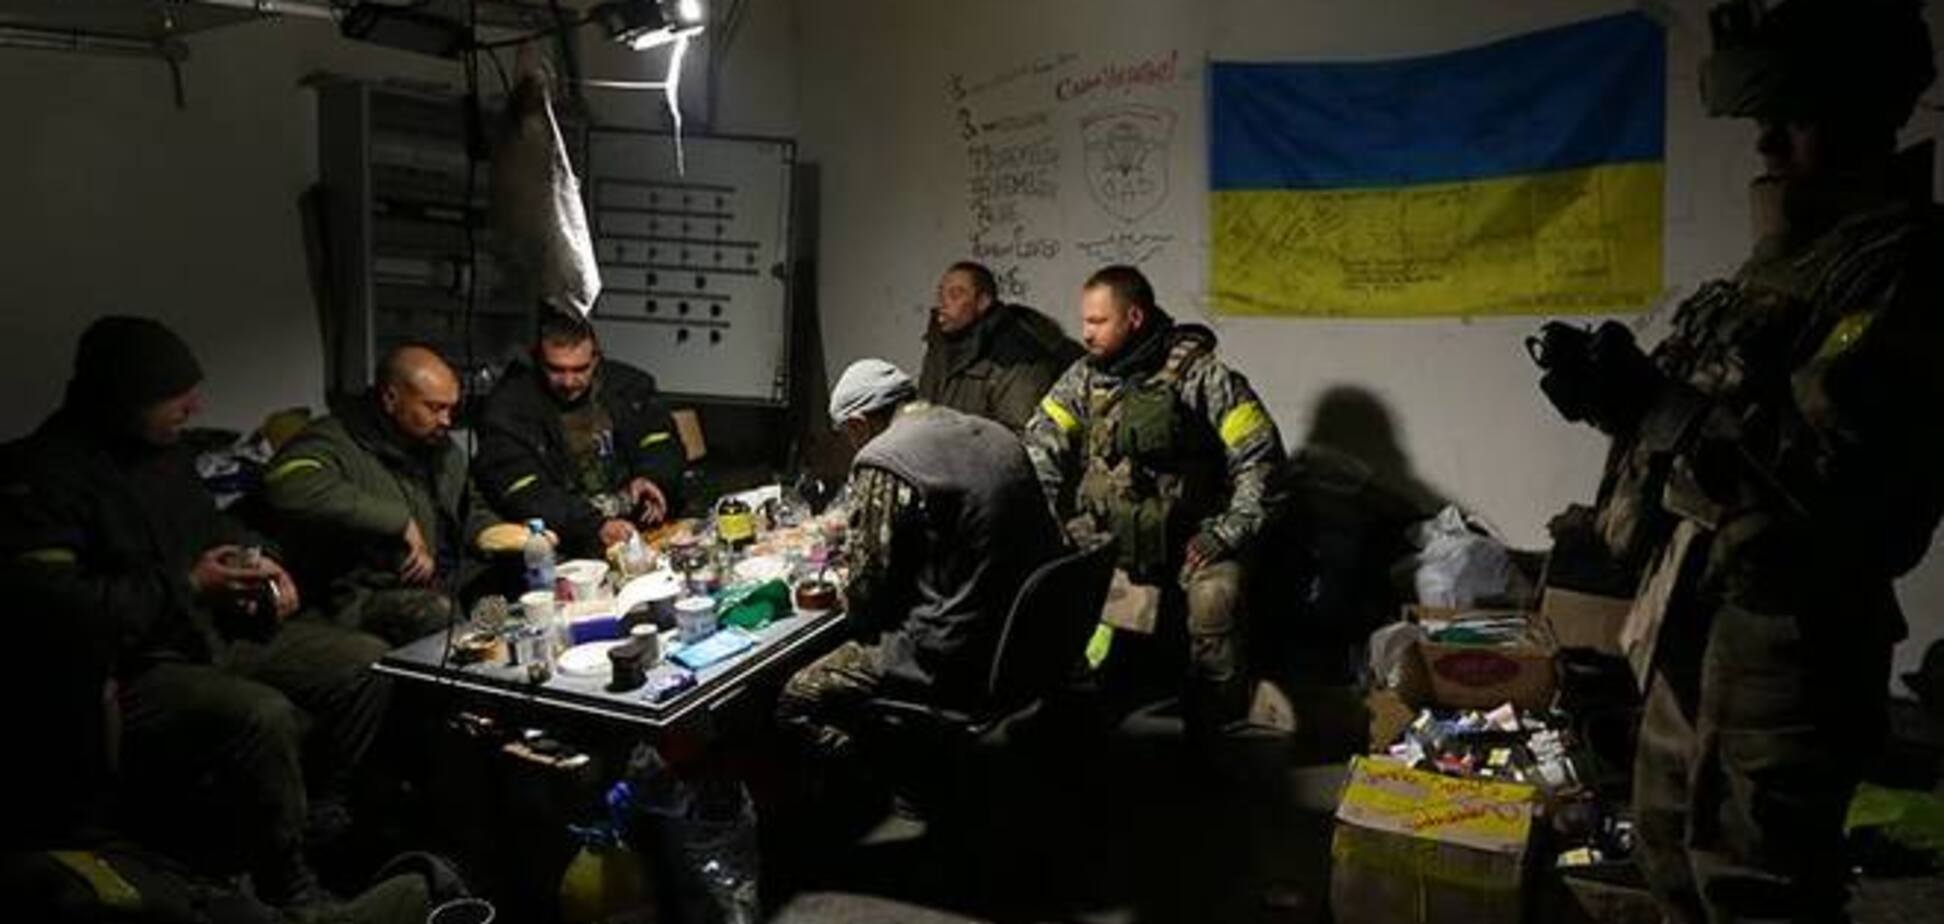 Волонтеры предложили разнообразить пайки украинских солдат сухими борщами и энергетическими коктейлями